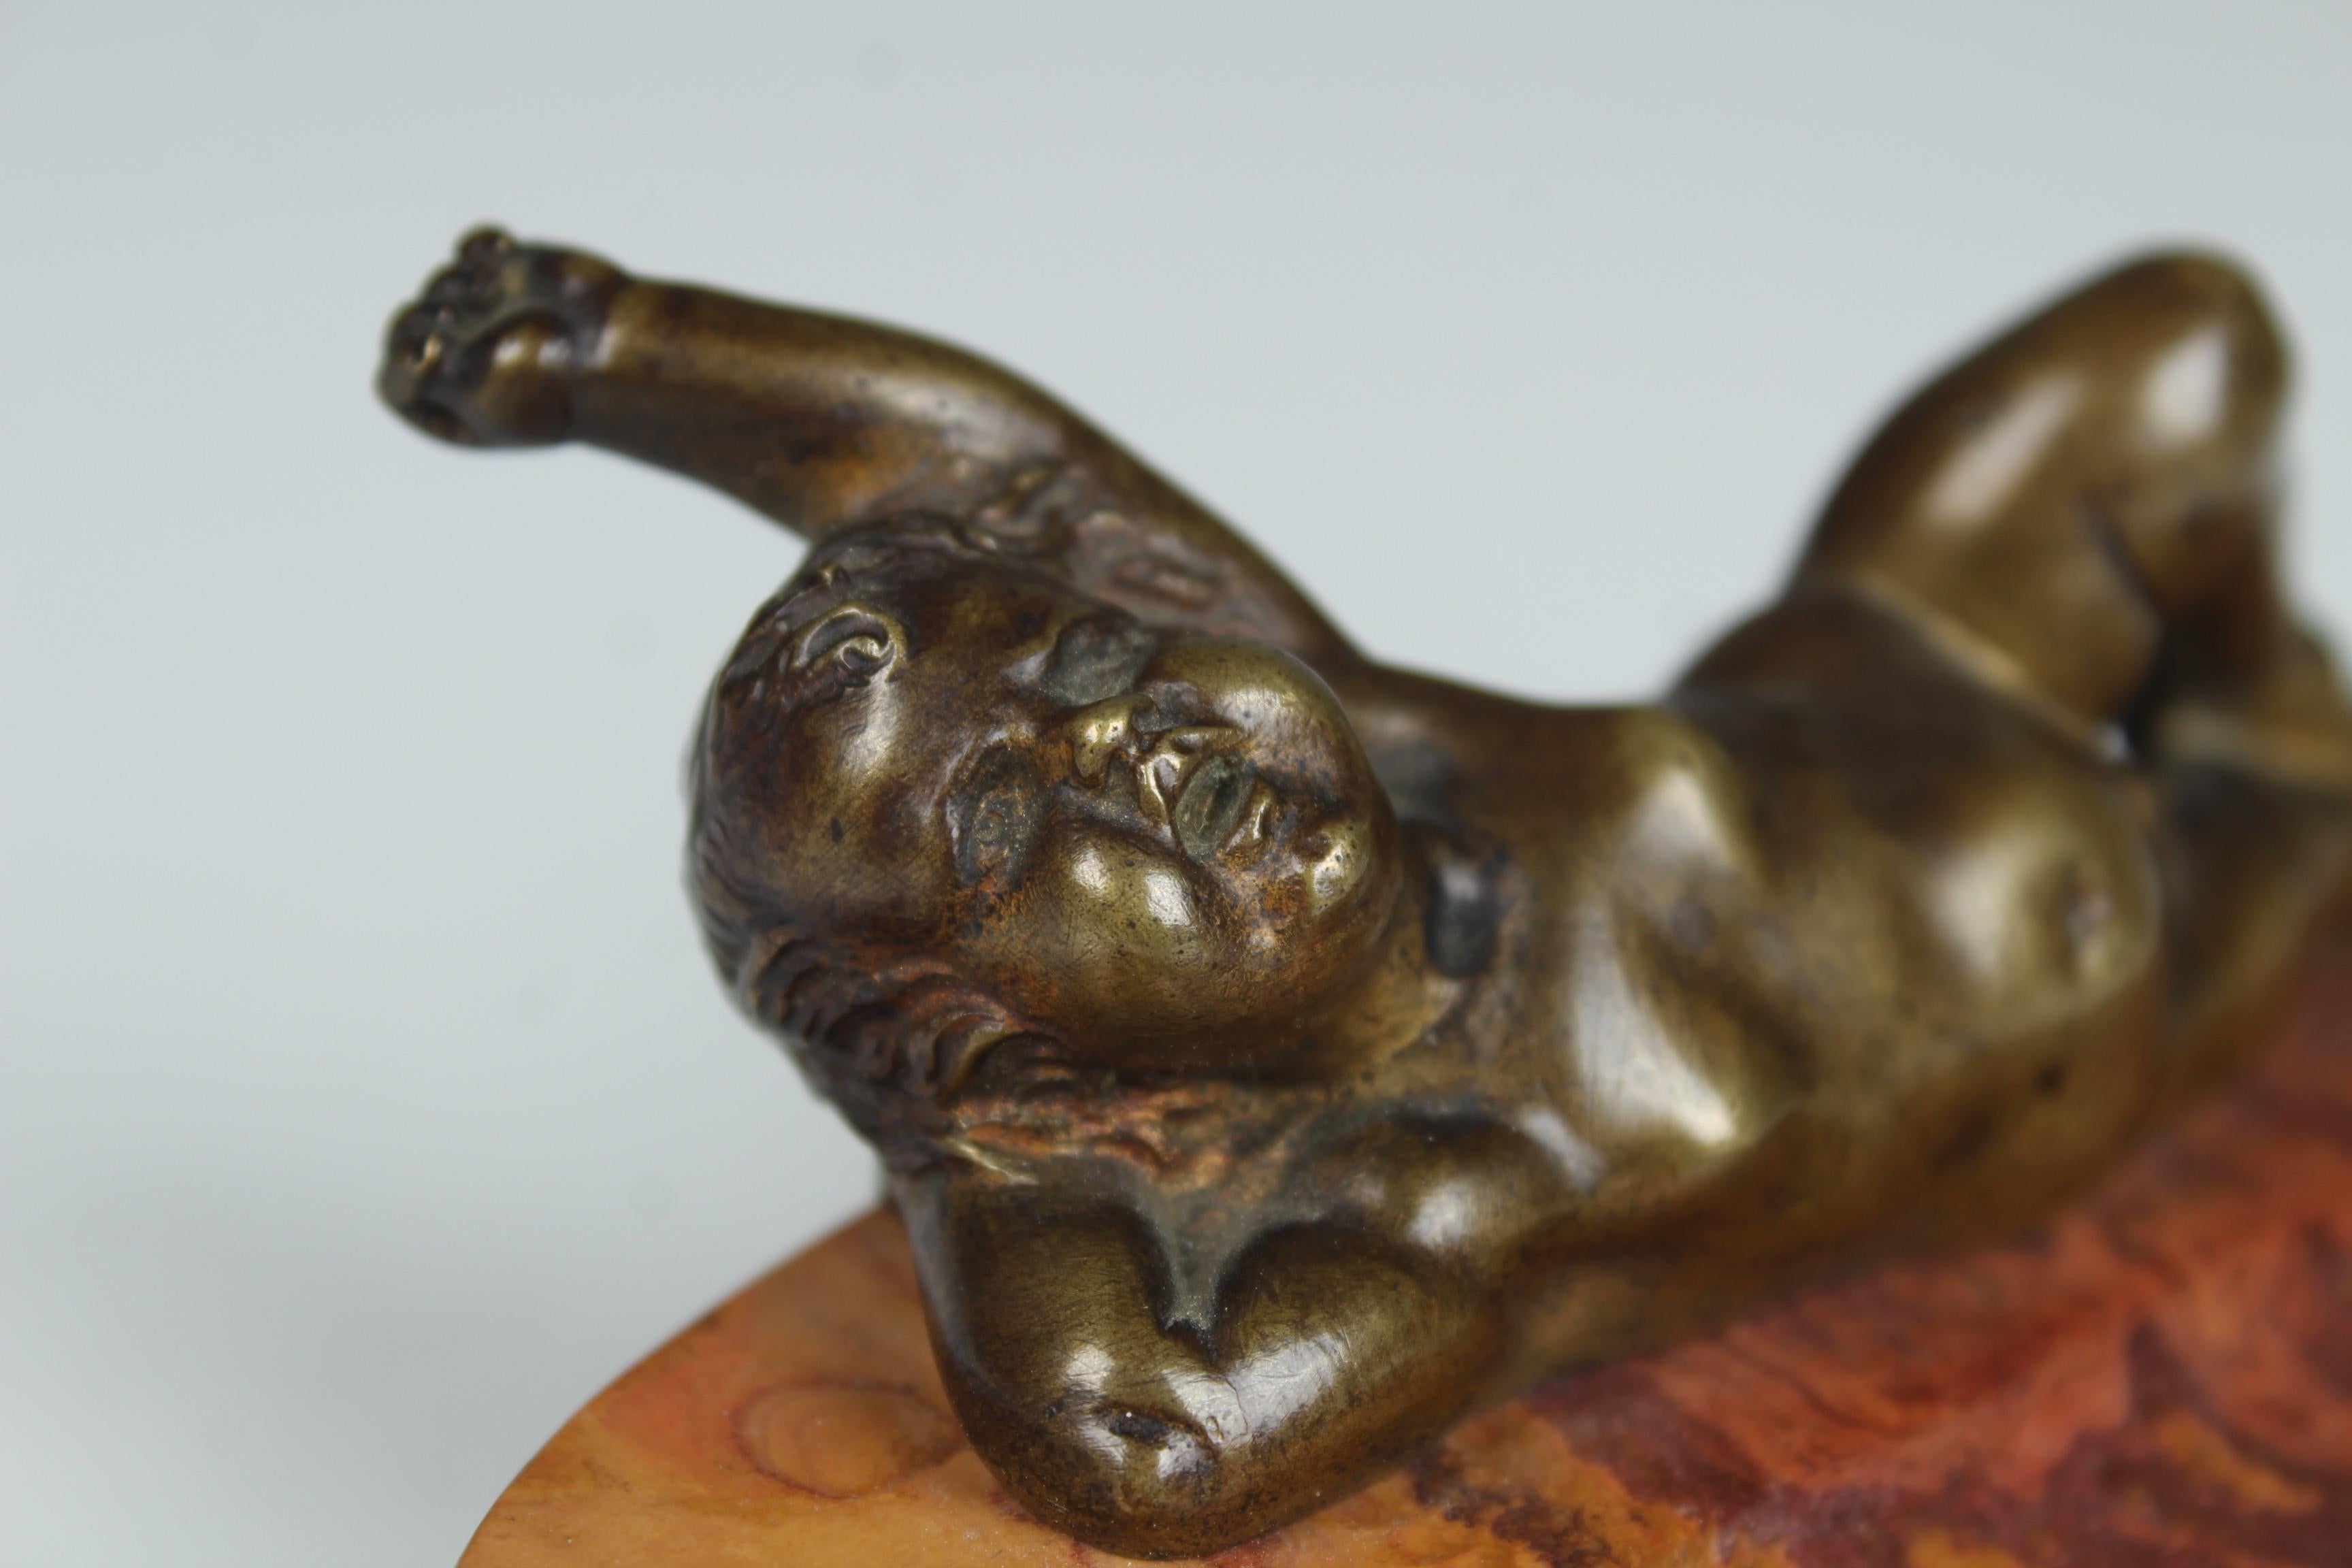 Schöne Vide-Poche aus Marmor und Bronze, Frankreich Ende des 19. Jahrhunderts.
Das Tablett ist aus einem wunderbar strukturierten roten Marmor gefertigt.
Darauf liegt ein Putto aus Bronze, schön gemeißelt.
